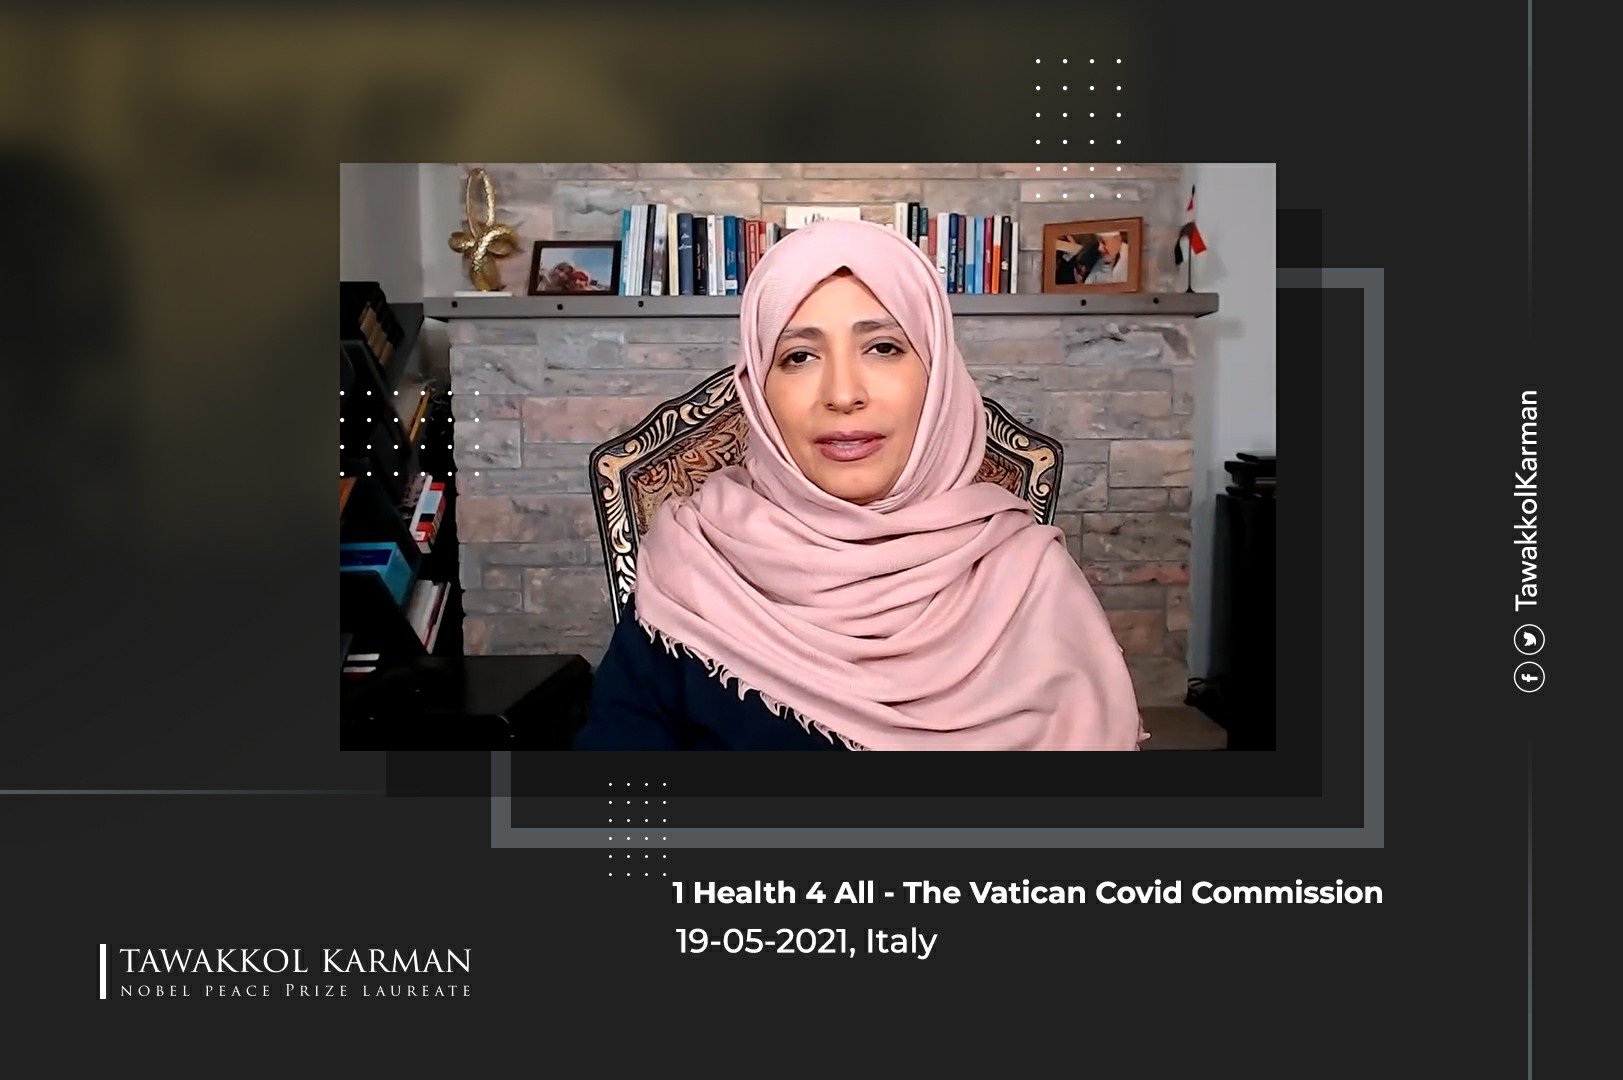 Tawakkol Karman Speech at 1 Health 4 All - The Vatican Covid Commission